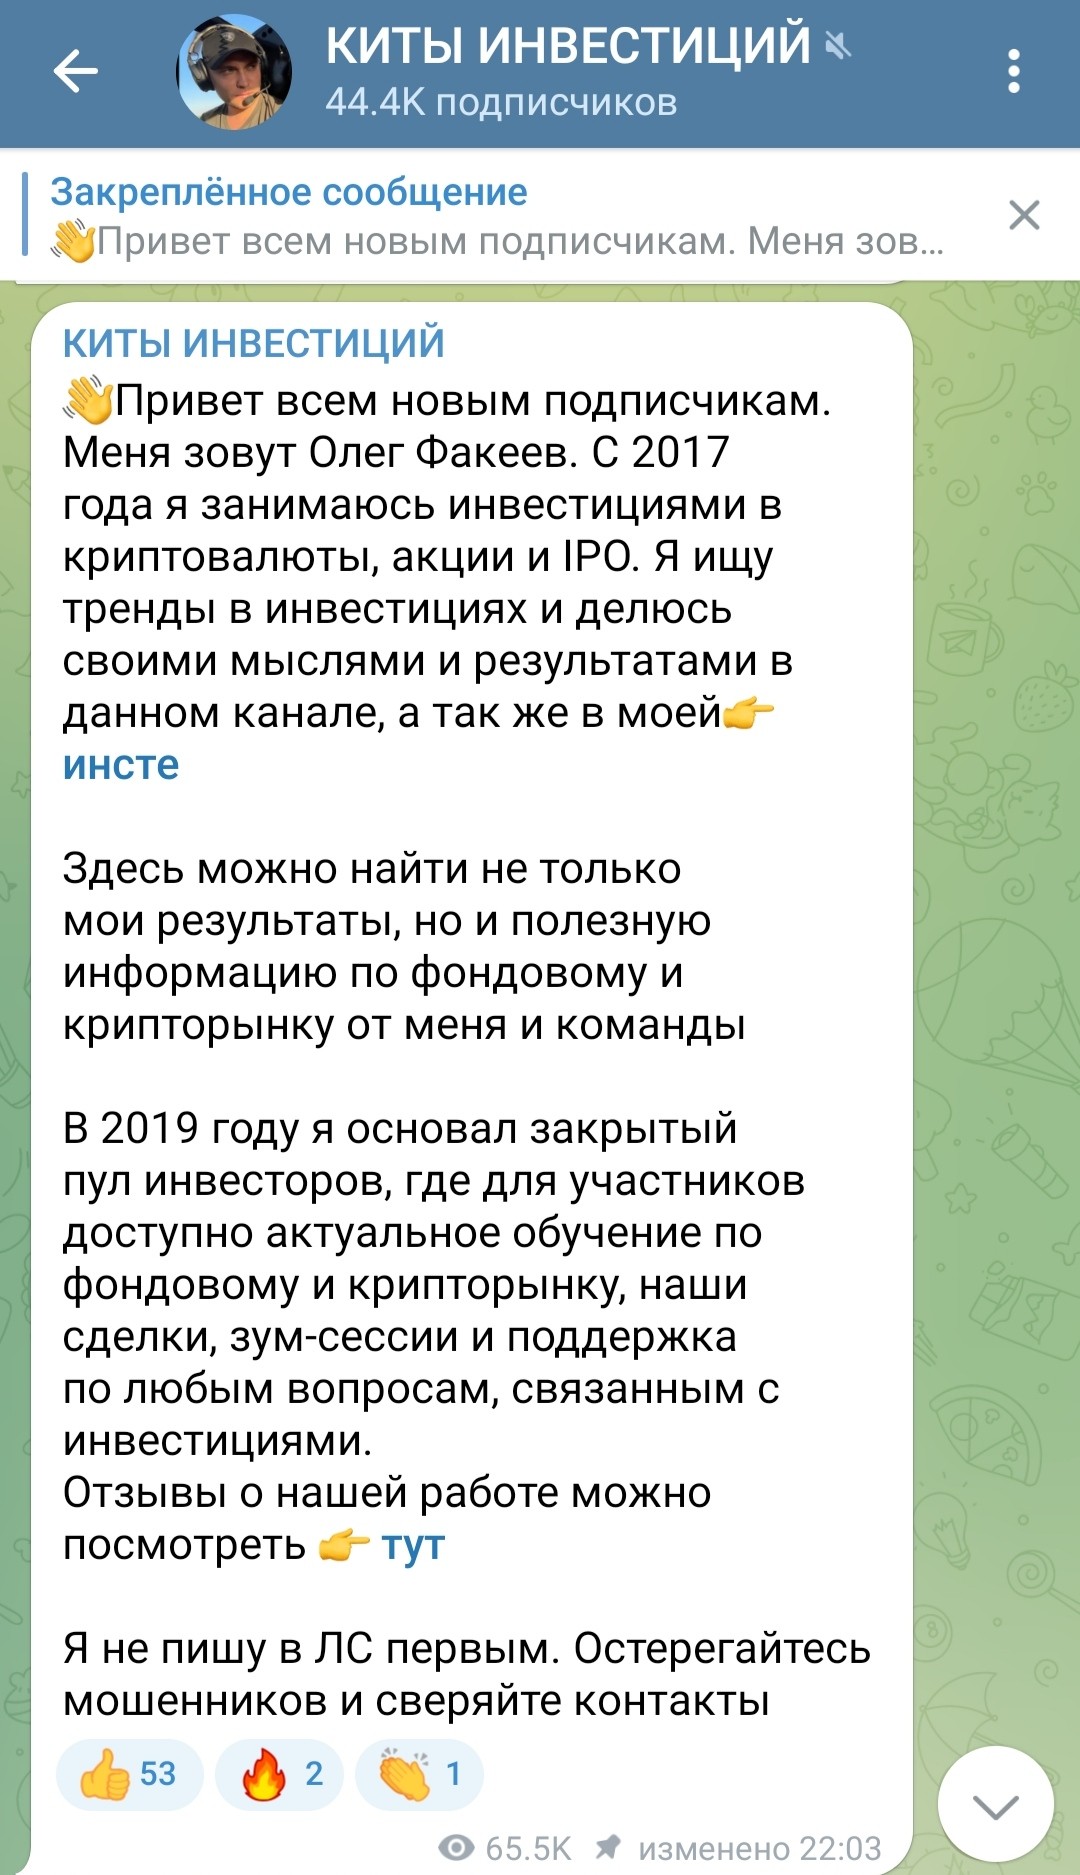 Олег Факеев Киты инвестиций телеграм